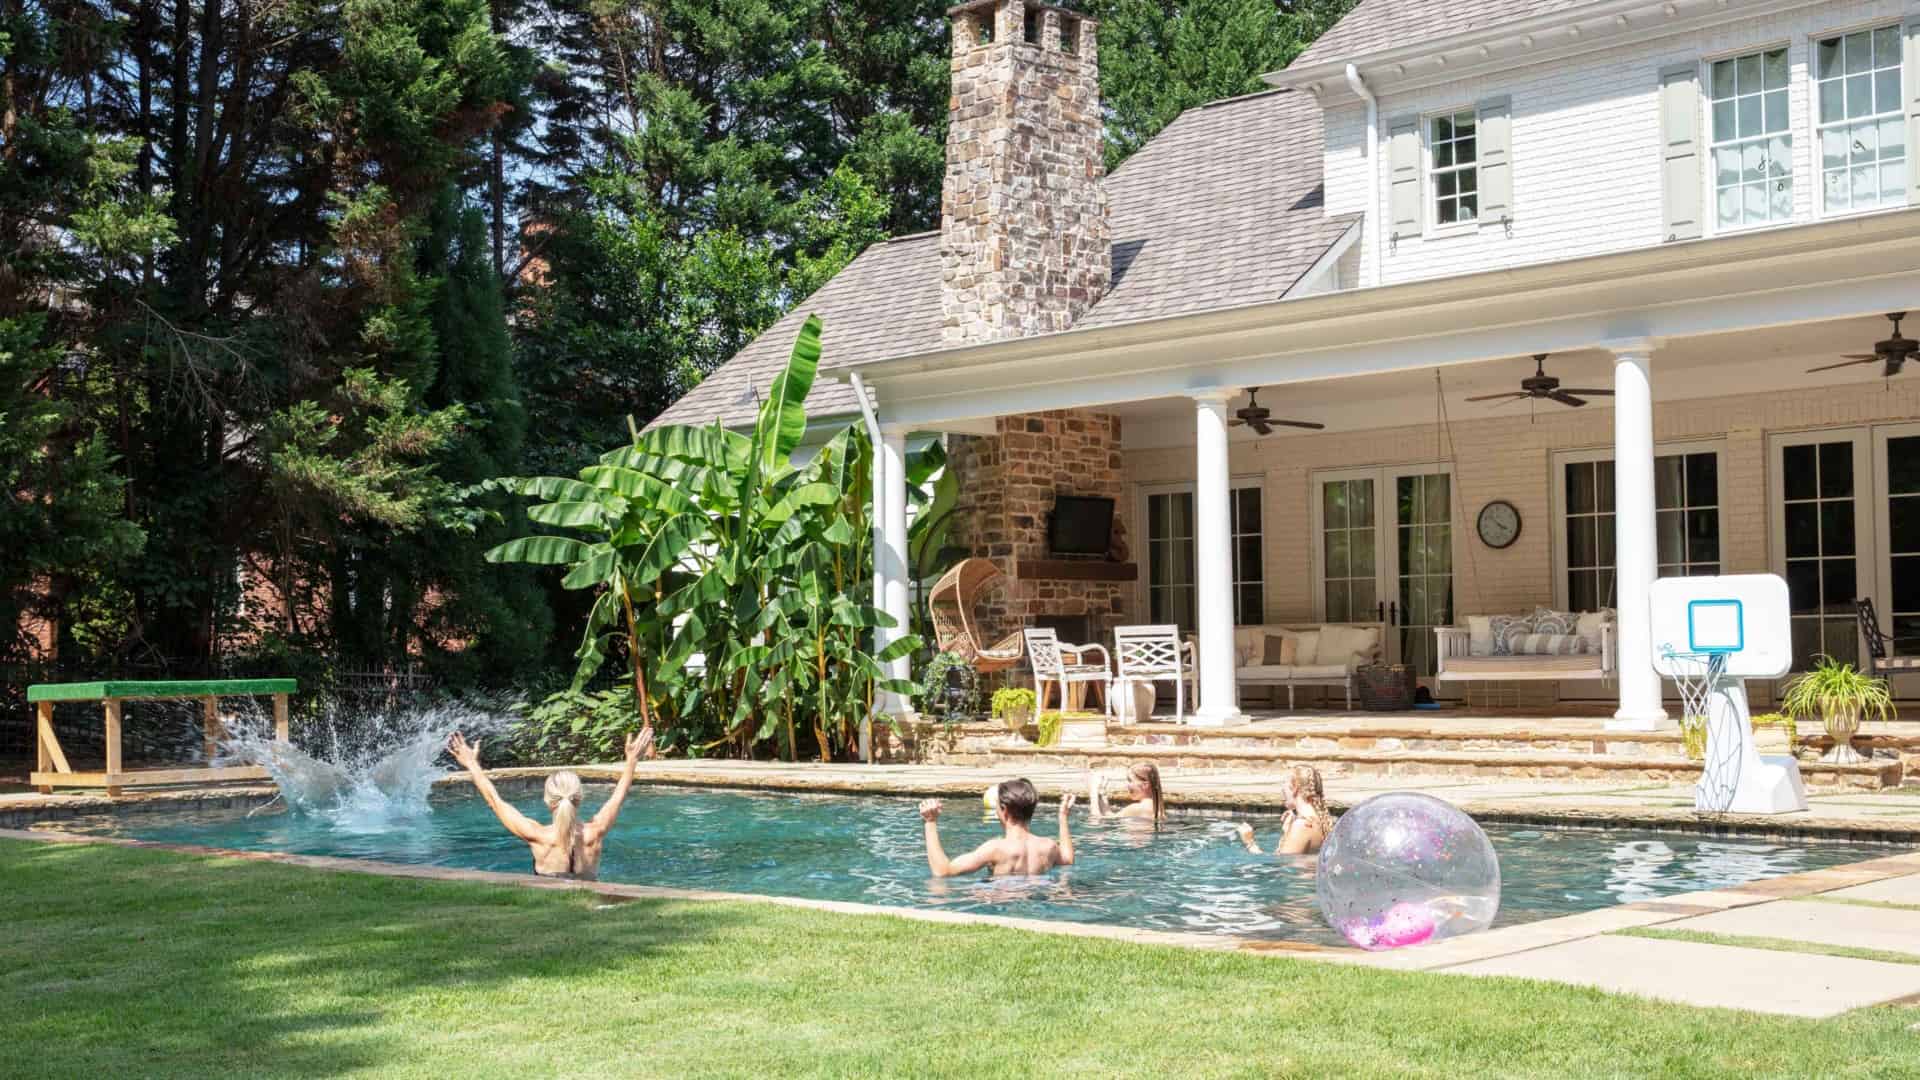 People swimming in backyard pool